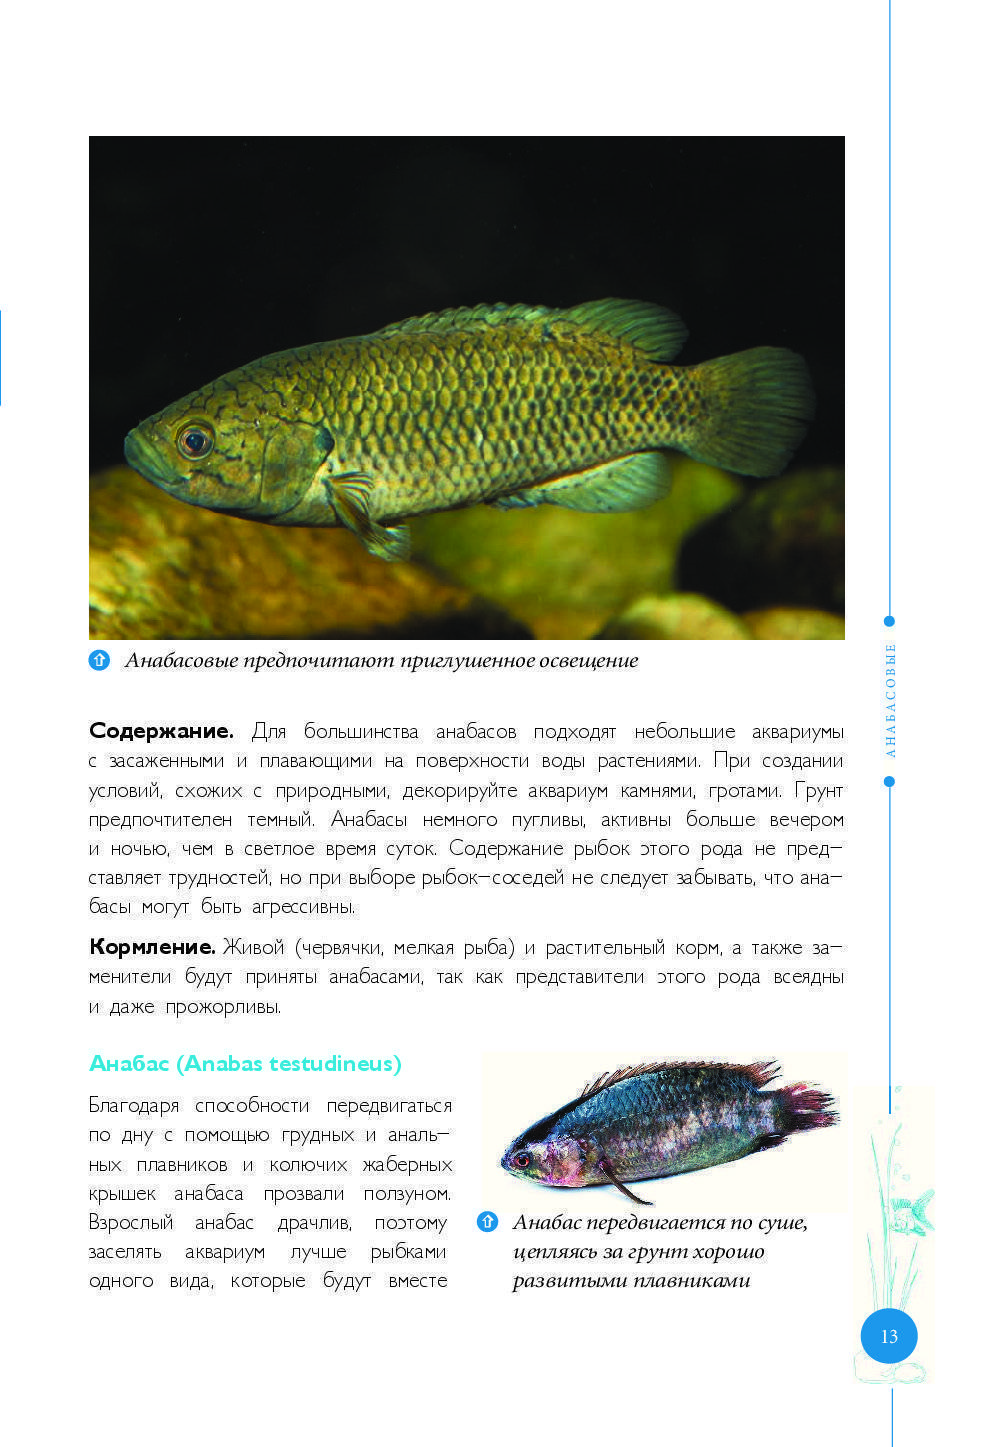 Хищные аквариумные рыбки: названия и фото видов, содержание и разведение